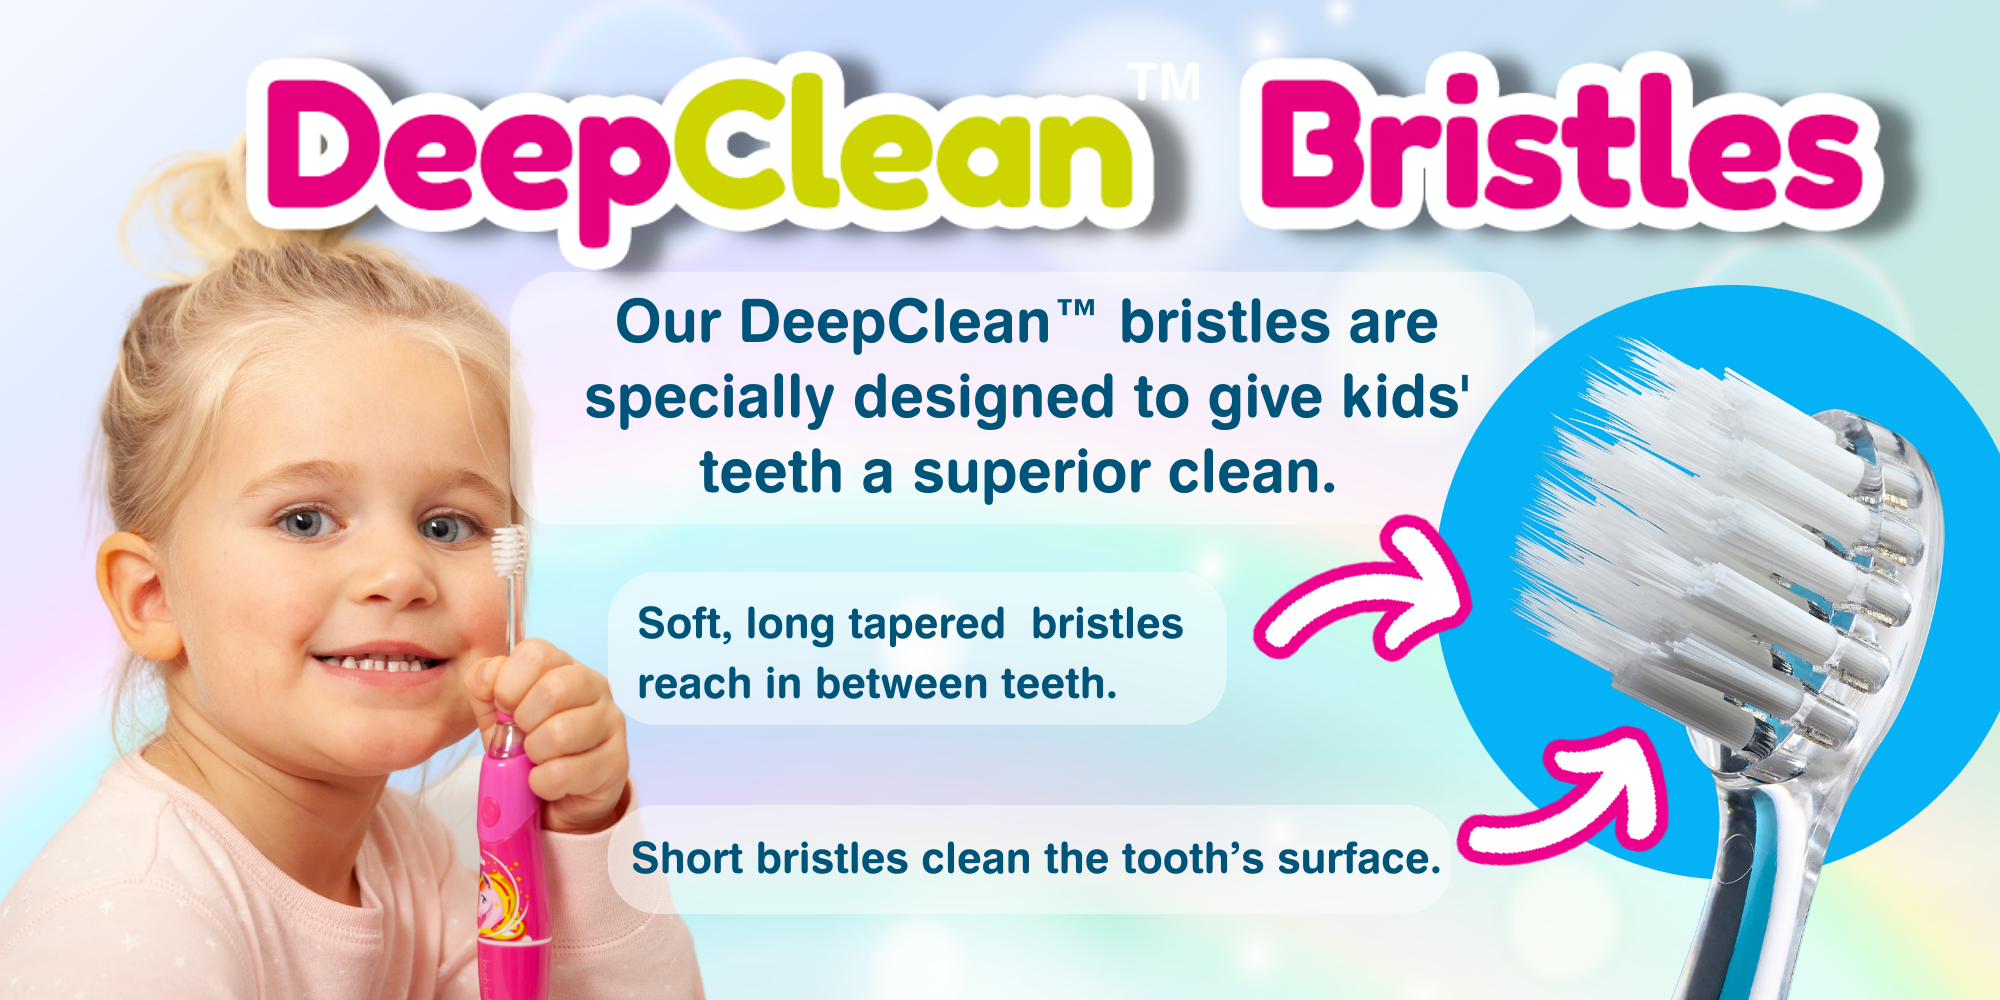 Deep clean bristles toothbrush for kids - best kids electric toothbrush